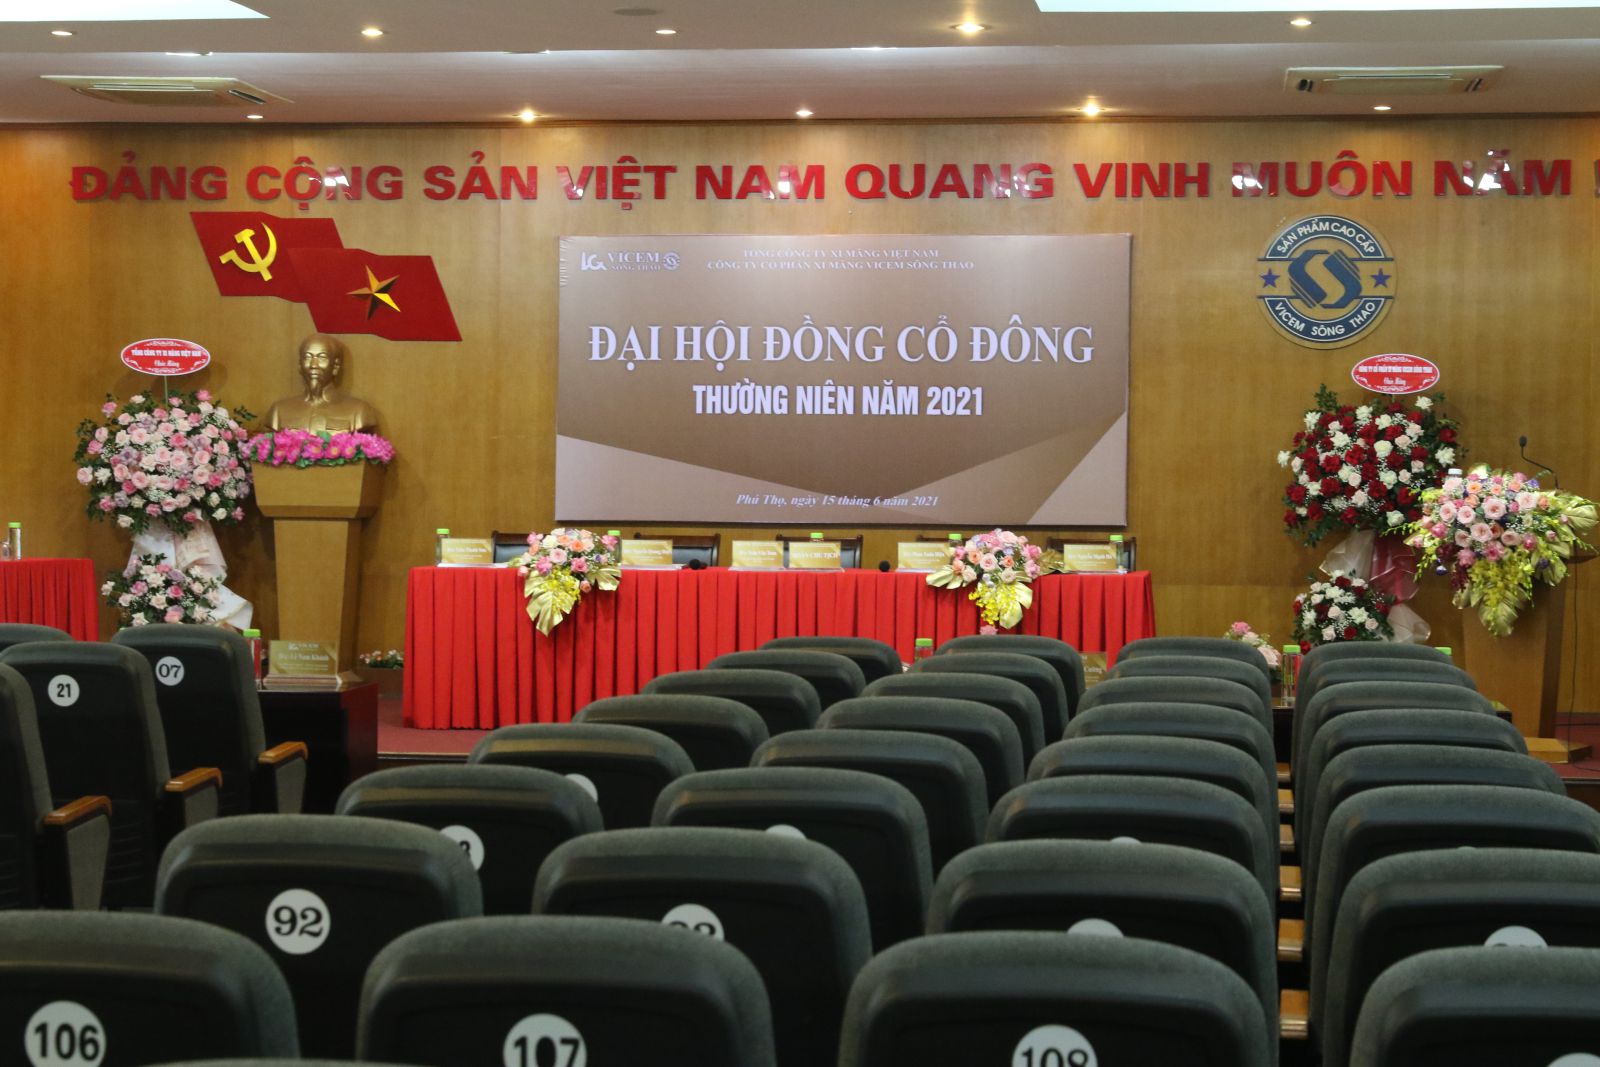  Công ty cổ phần xi măng Vicem Sông Thao tổ chức thành công Đại hội đồng cổ đông thường niên năm 2021